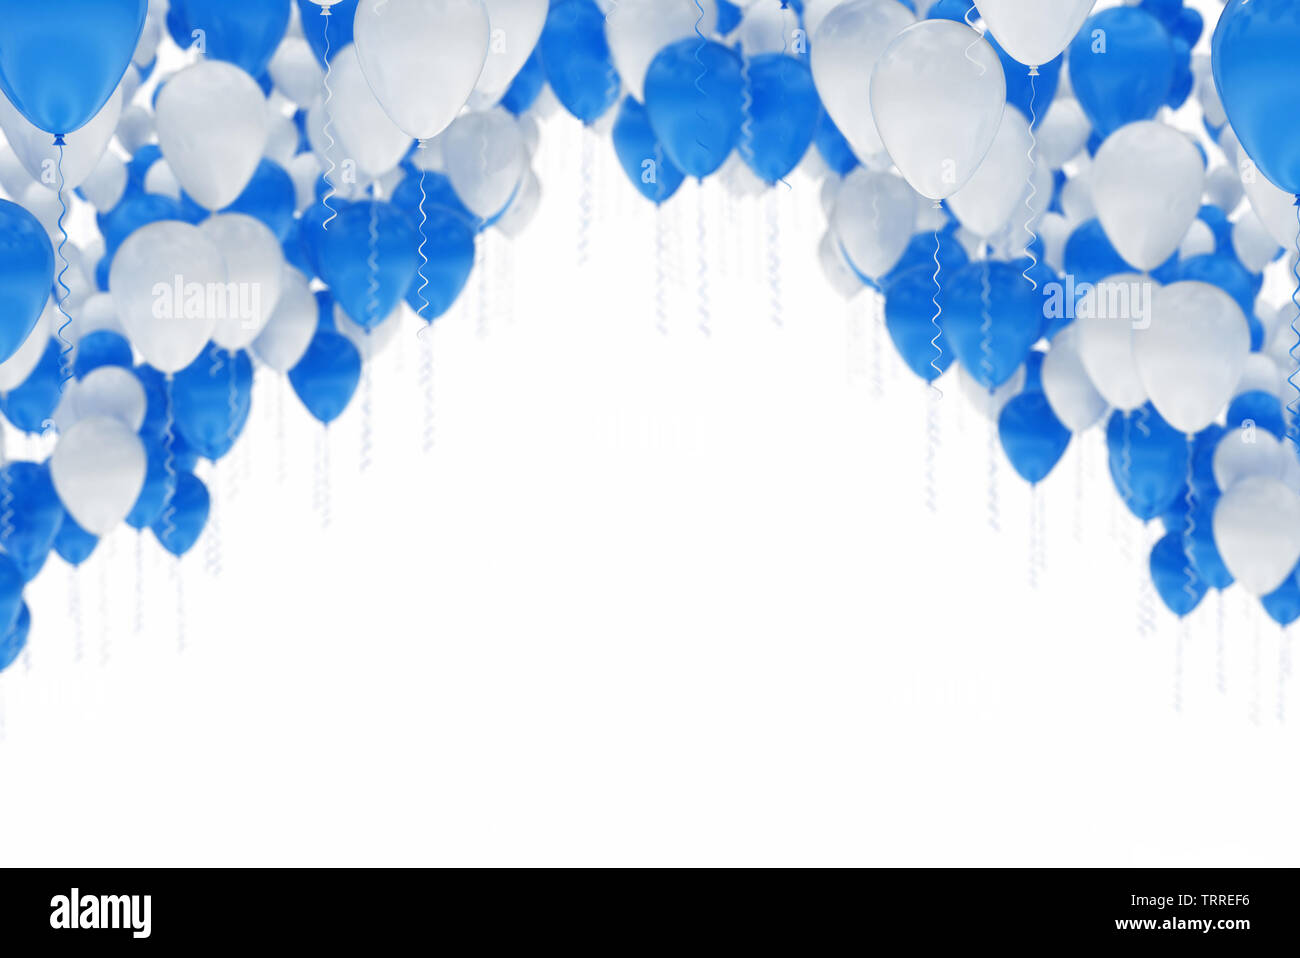 Arc aus blauen und weißen Luftballons, auf weissem Hintergrund - Feier Stockfoto